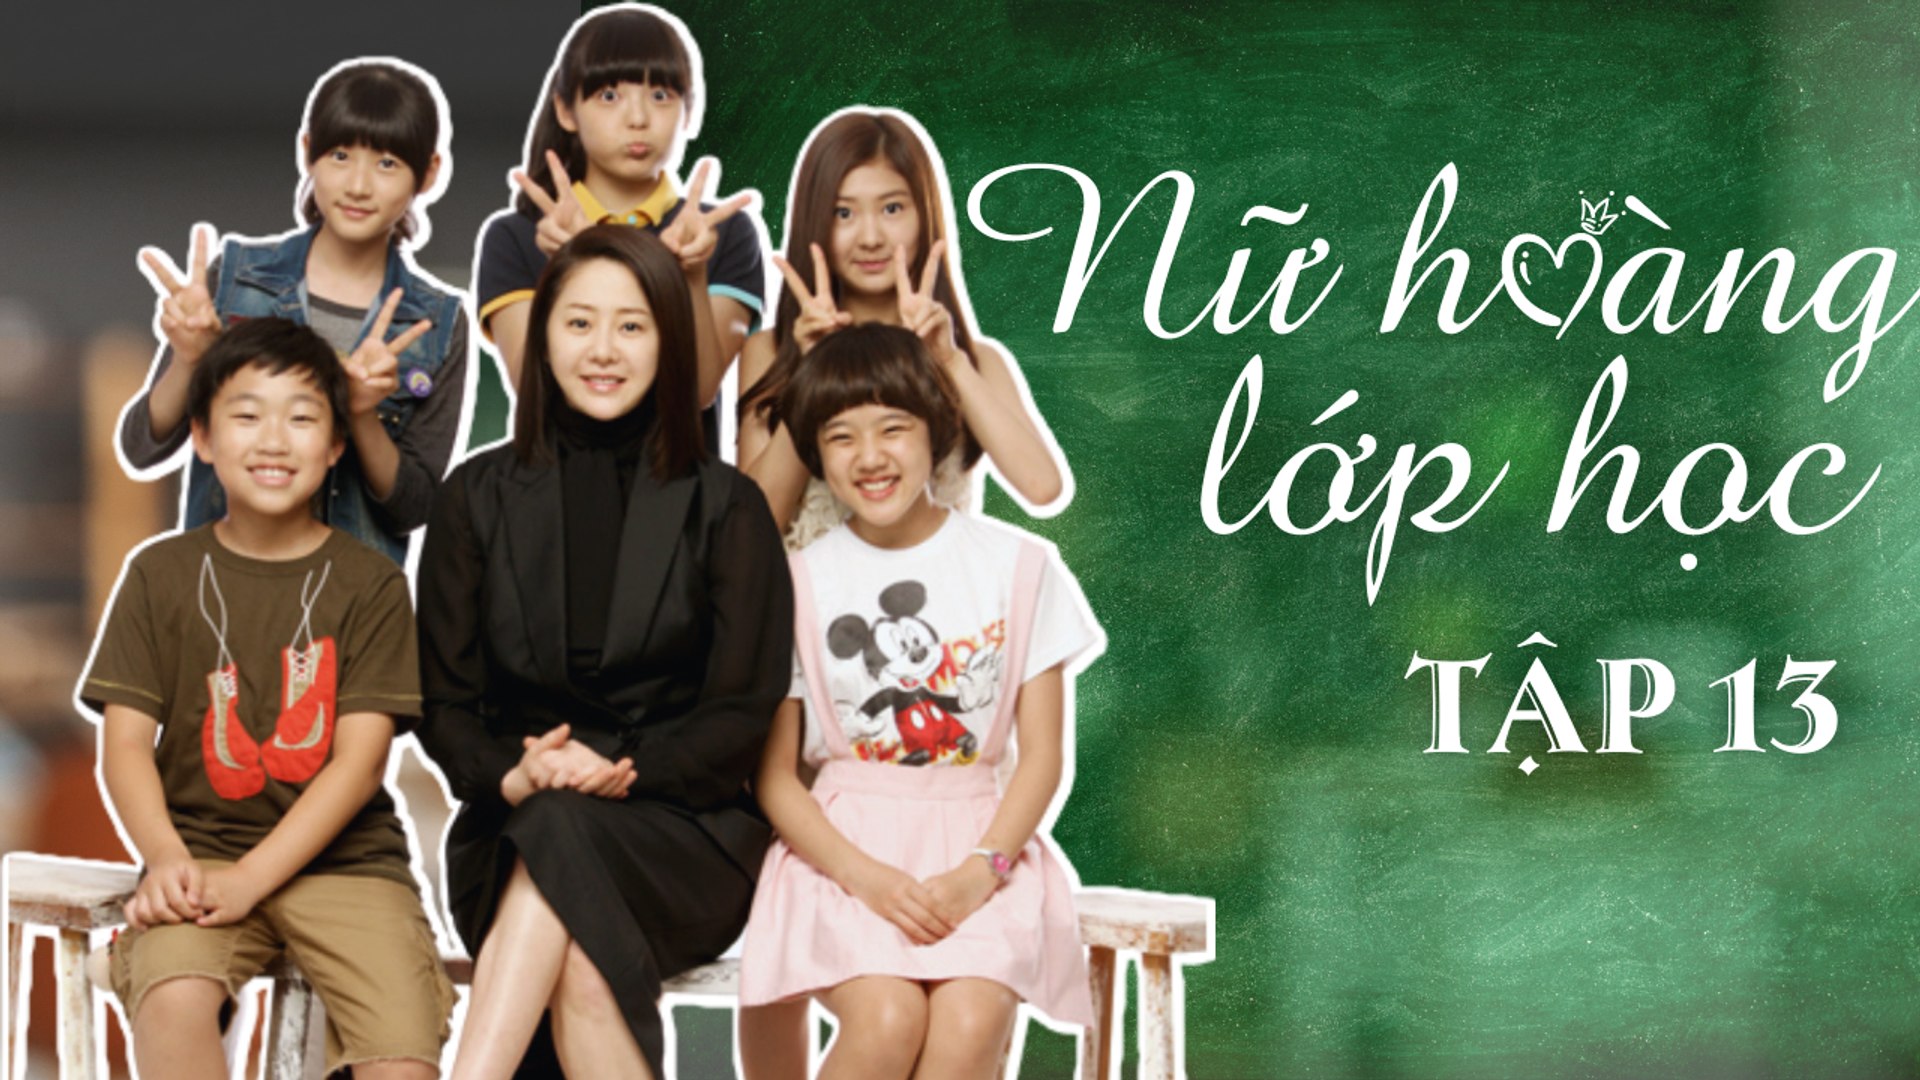 ⁣NỮ HOÀNG LỚP HỌC| TẬP 13| Phim cảm động về tình thầy trò Hàn Quốc